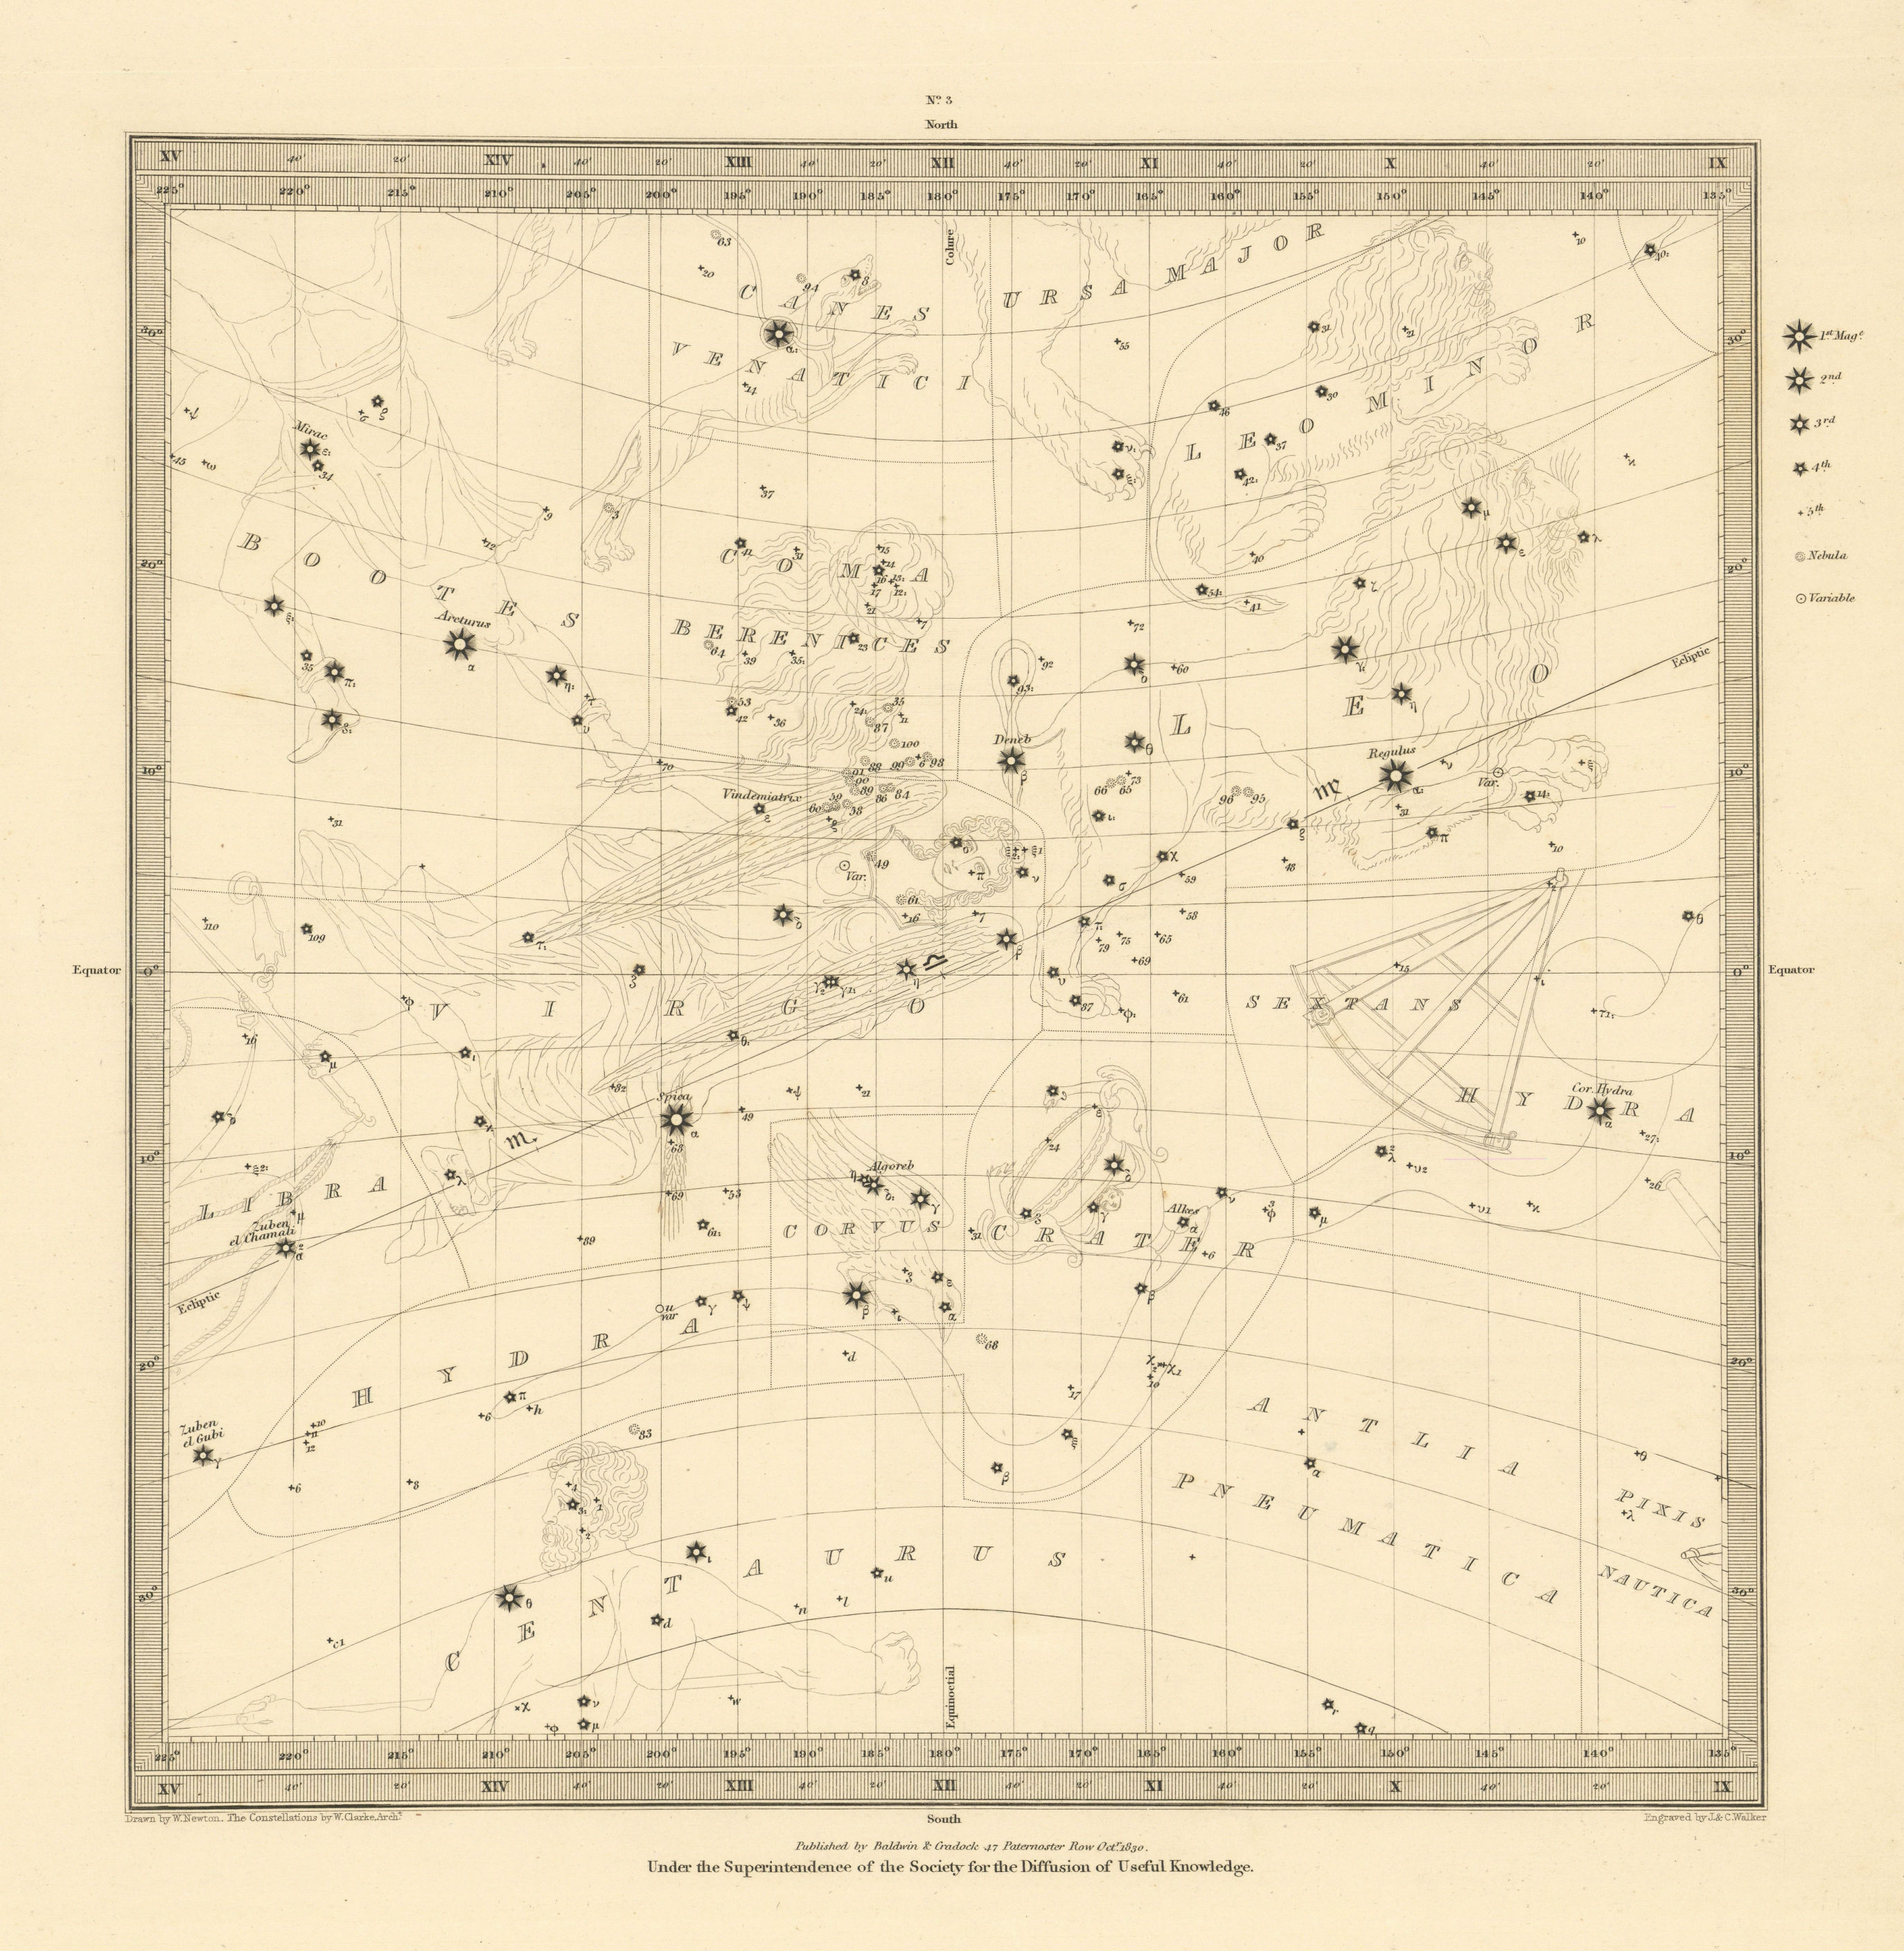 Old Antique Colour Manuscript Picture Map 1709 1700's REPRINT The Celestial Sky 